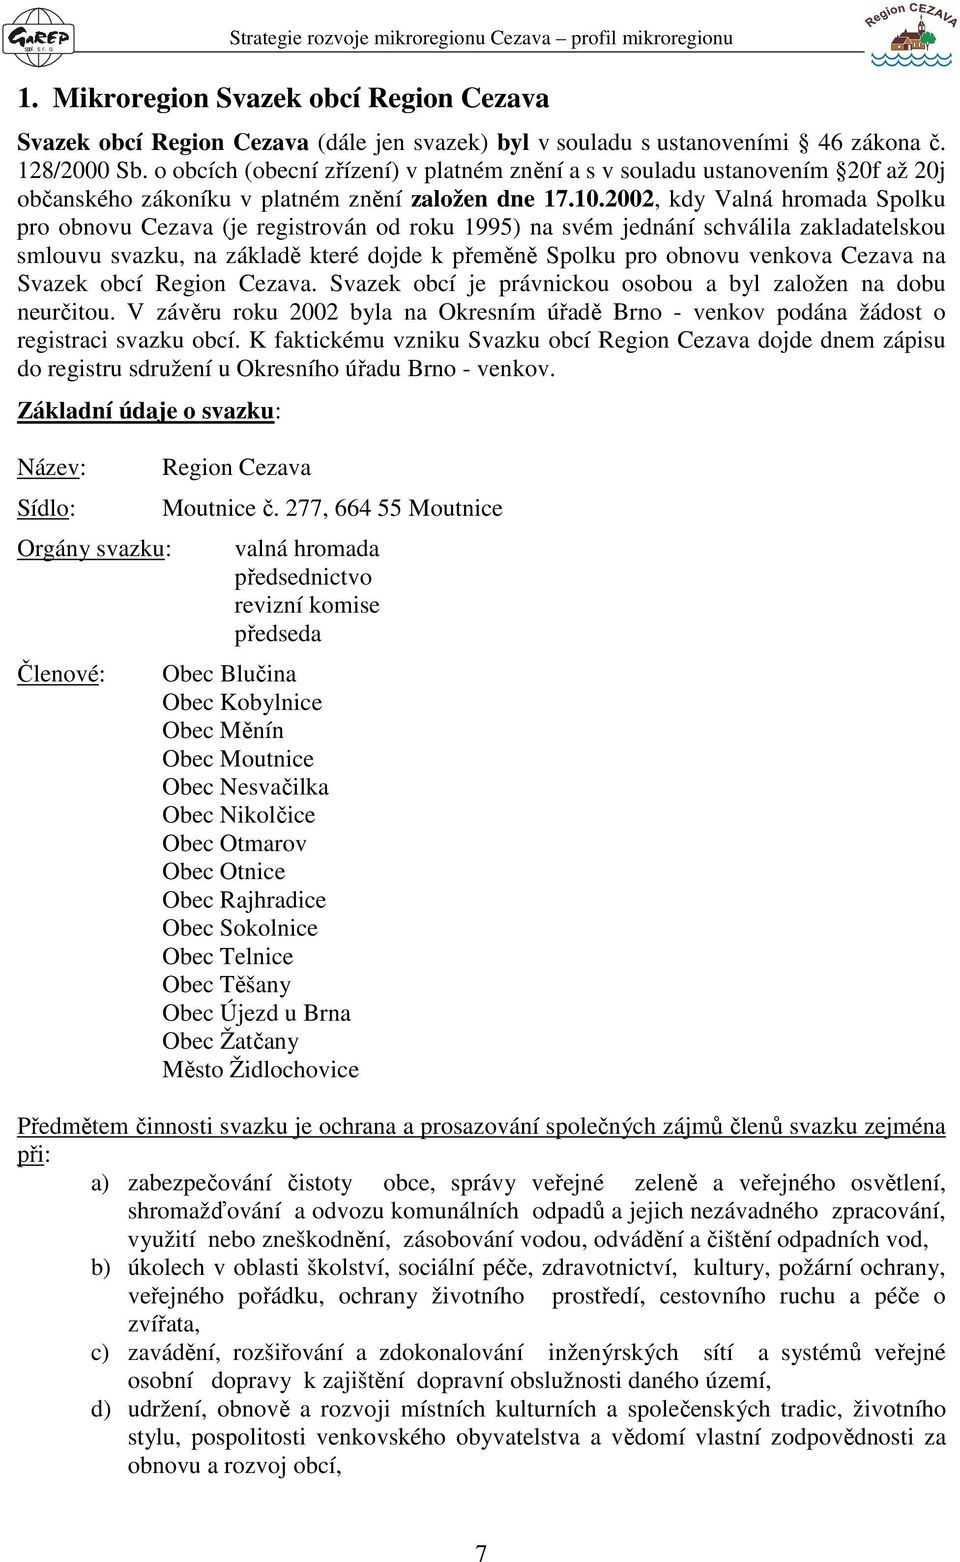 2002, kdy Valná hromada Spolku pro obnovu Cezava (je registrován od roku 1995) na svém jednání schválila zakladatelskou smlouvu svazku, na základě které dojde k přeměně Spolku pro obnovu venkova